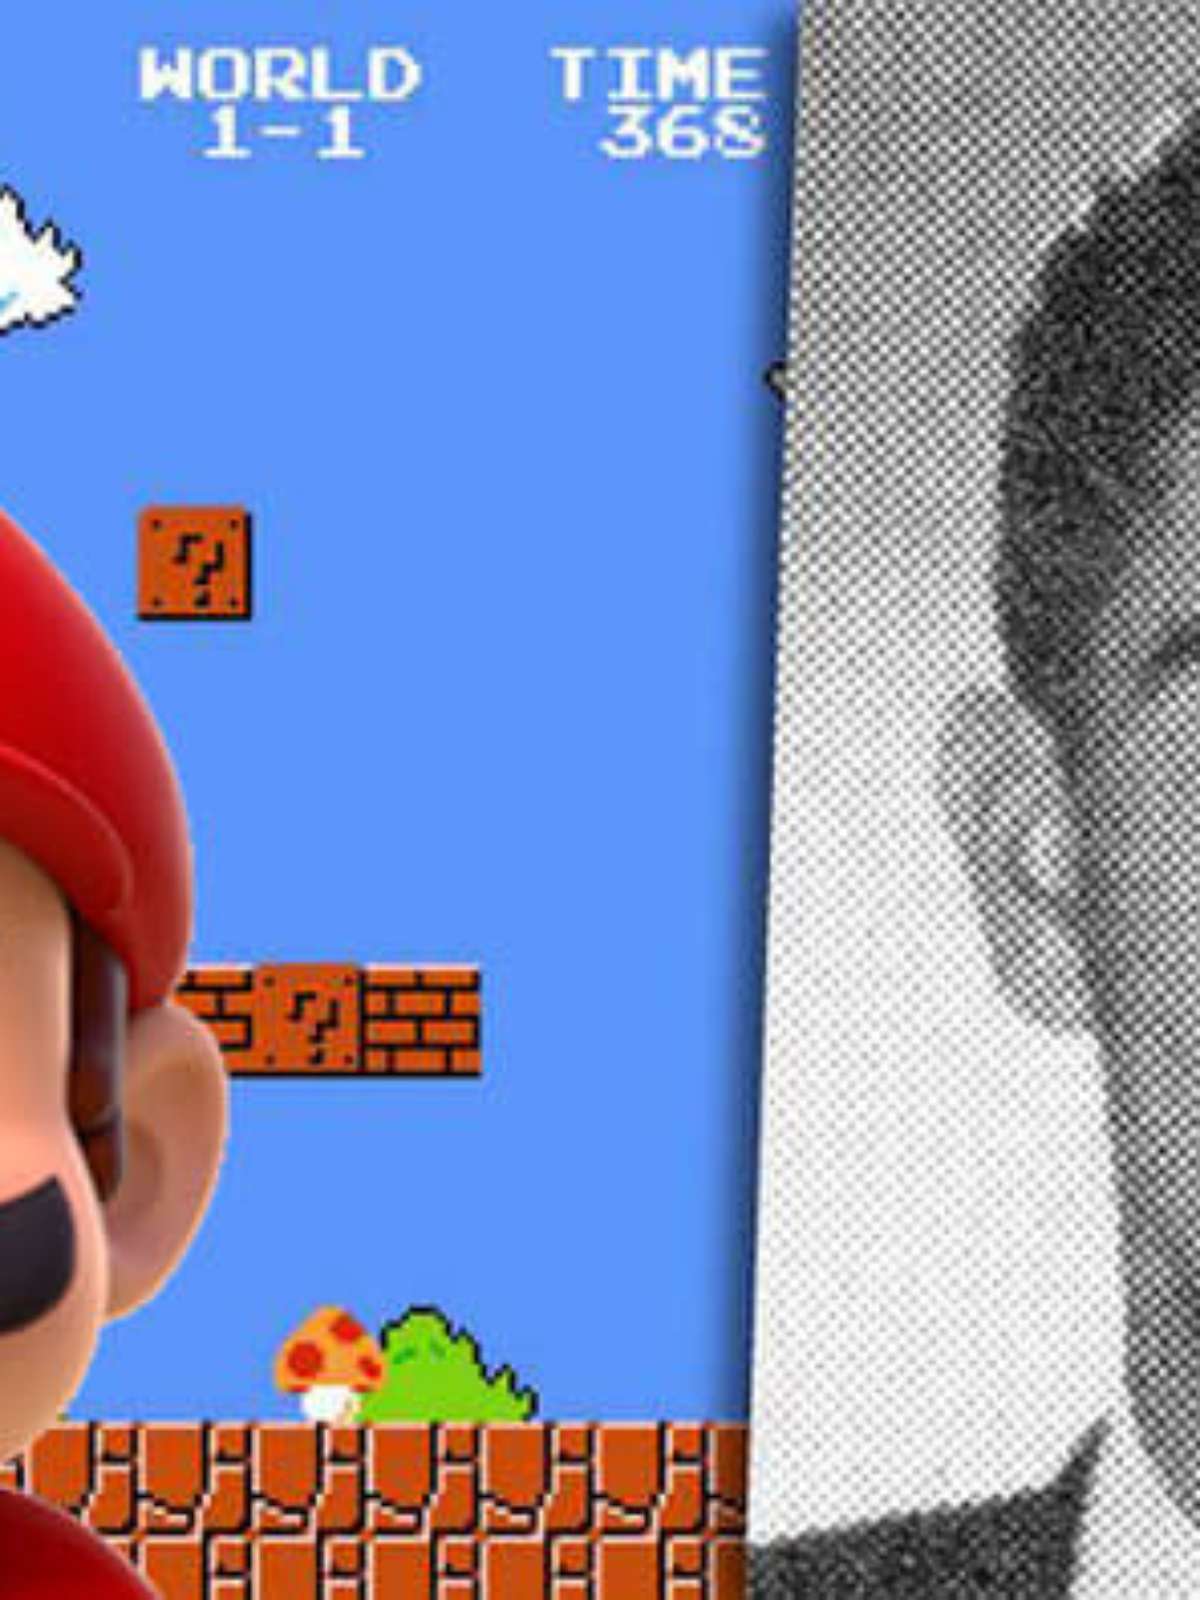 Empresário americano que inspirou nome do herói Super Mario morre